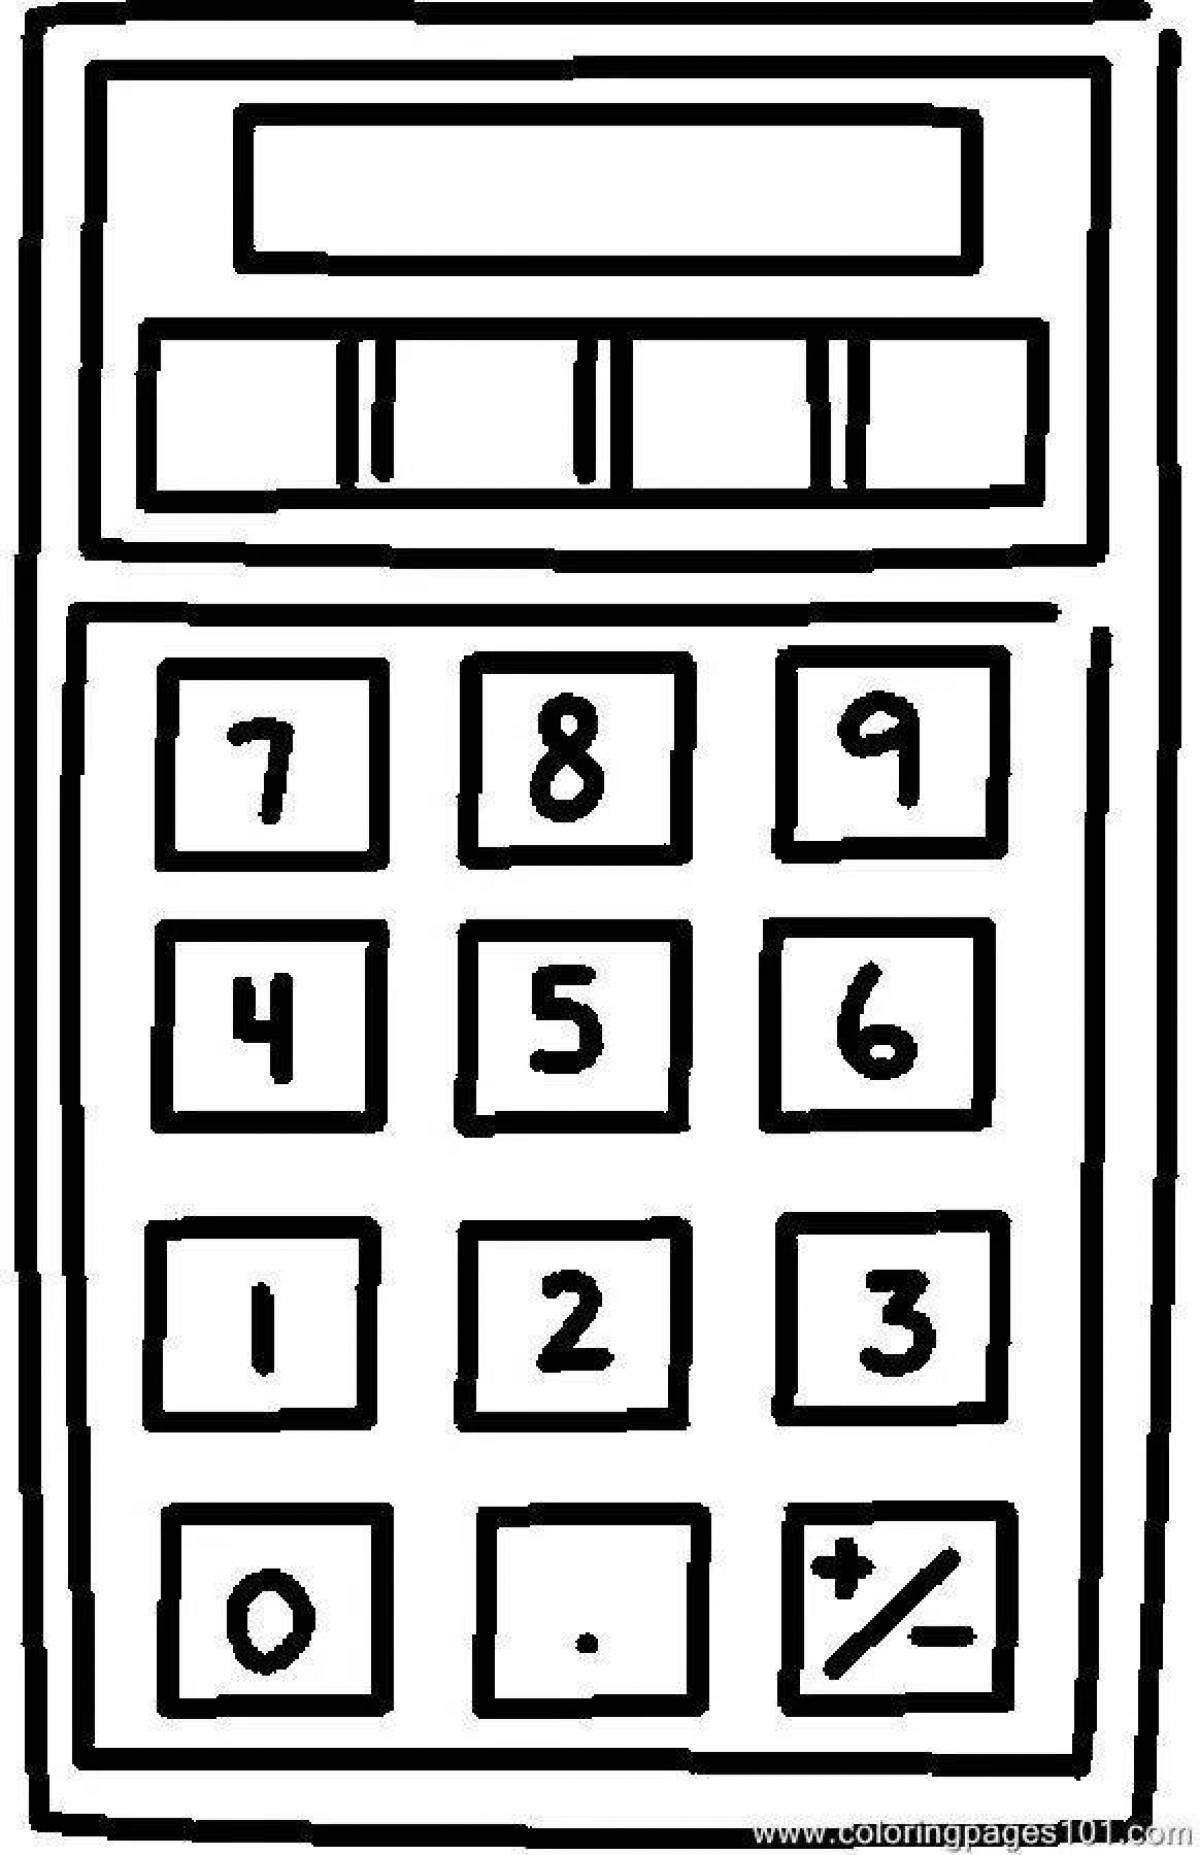 Color-zany calculator